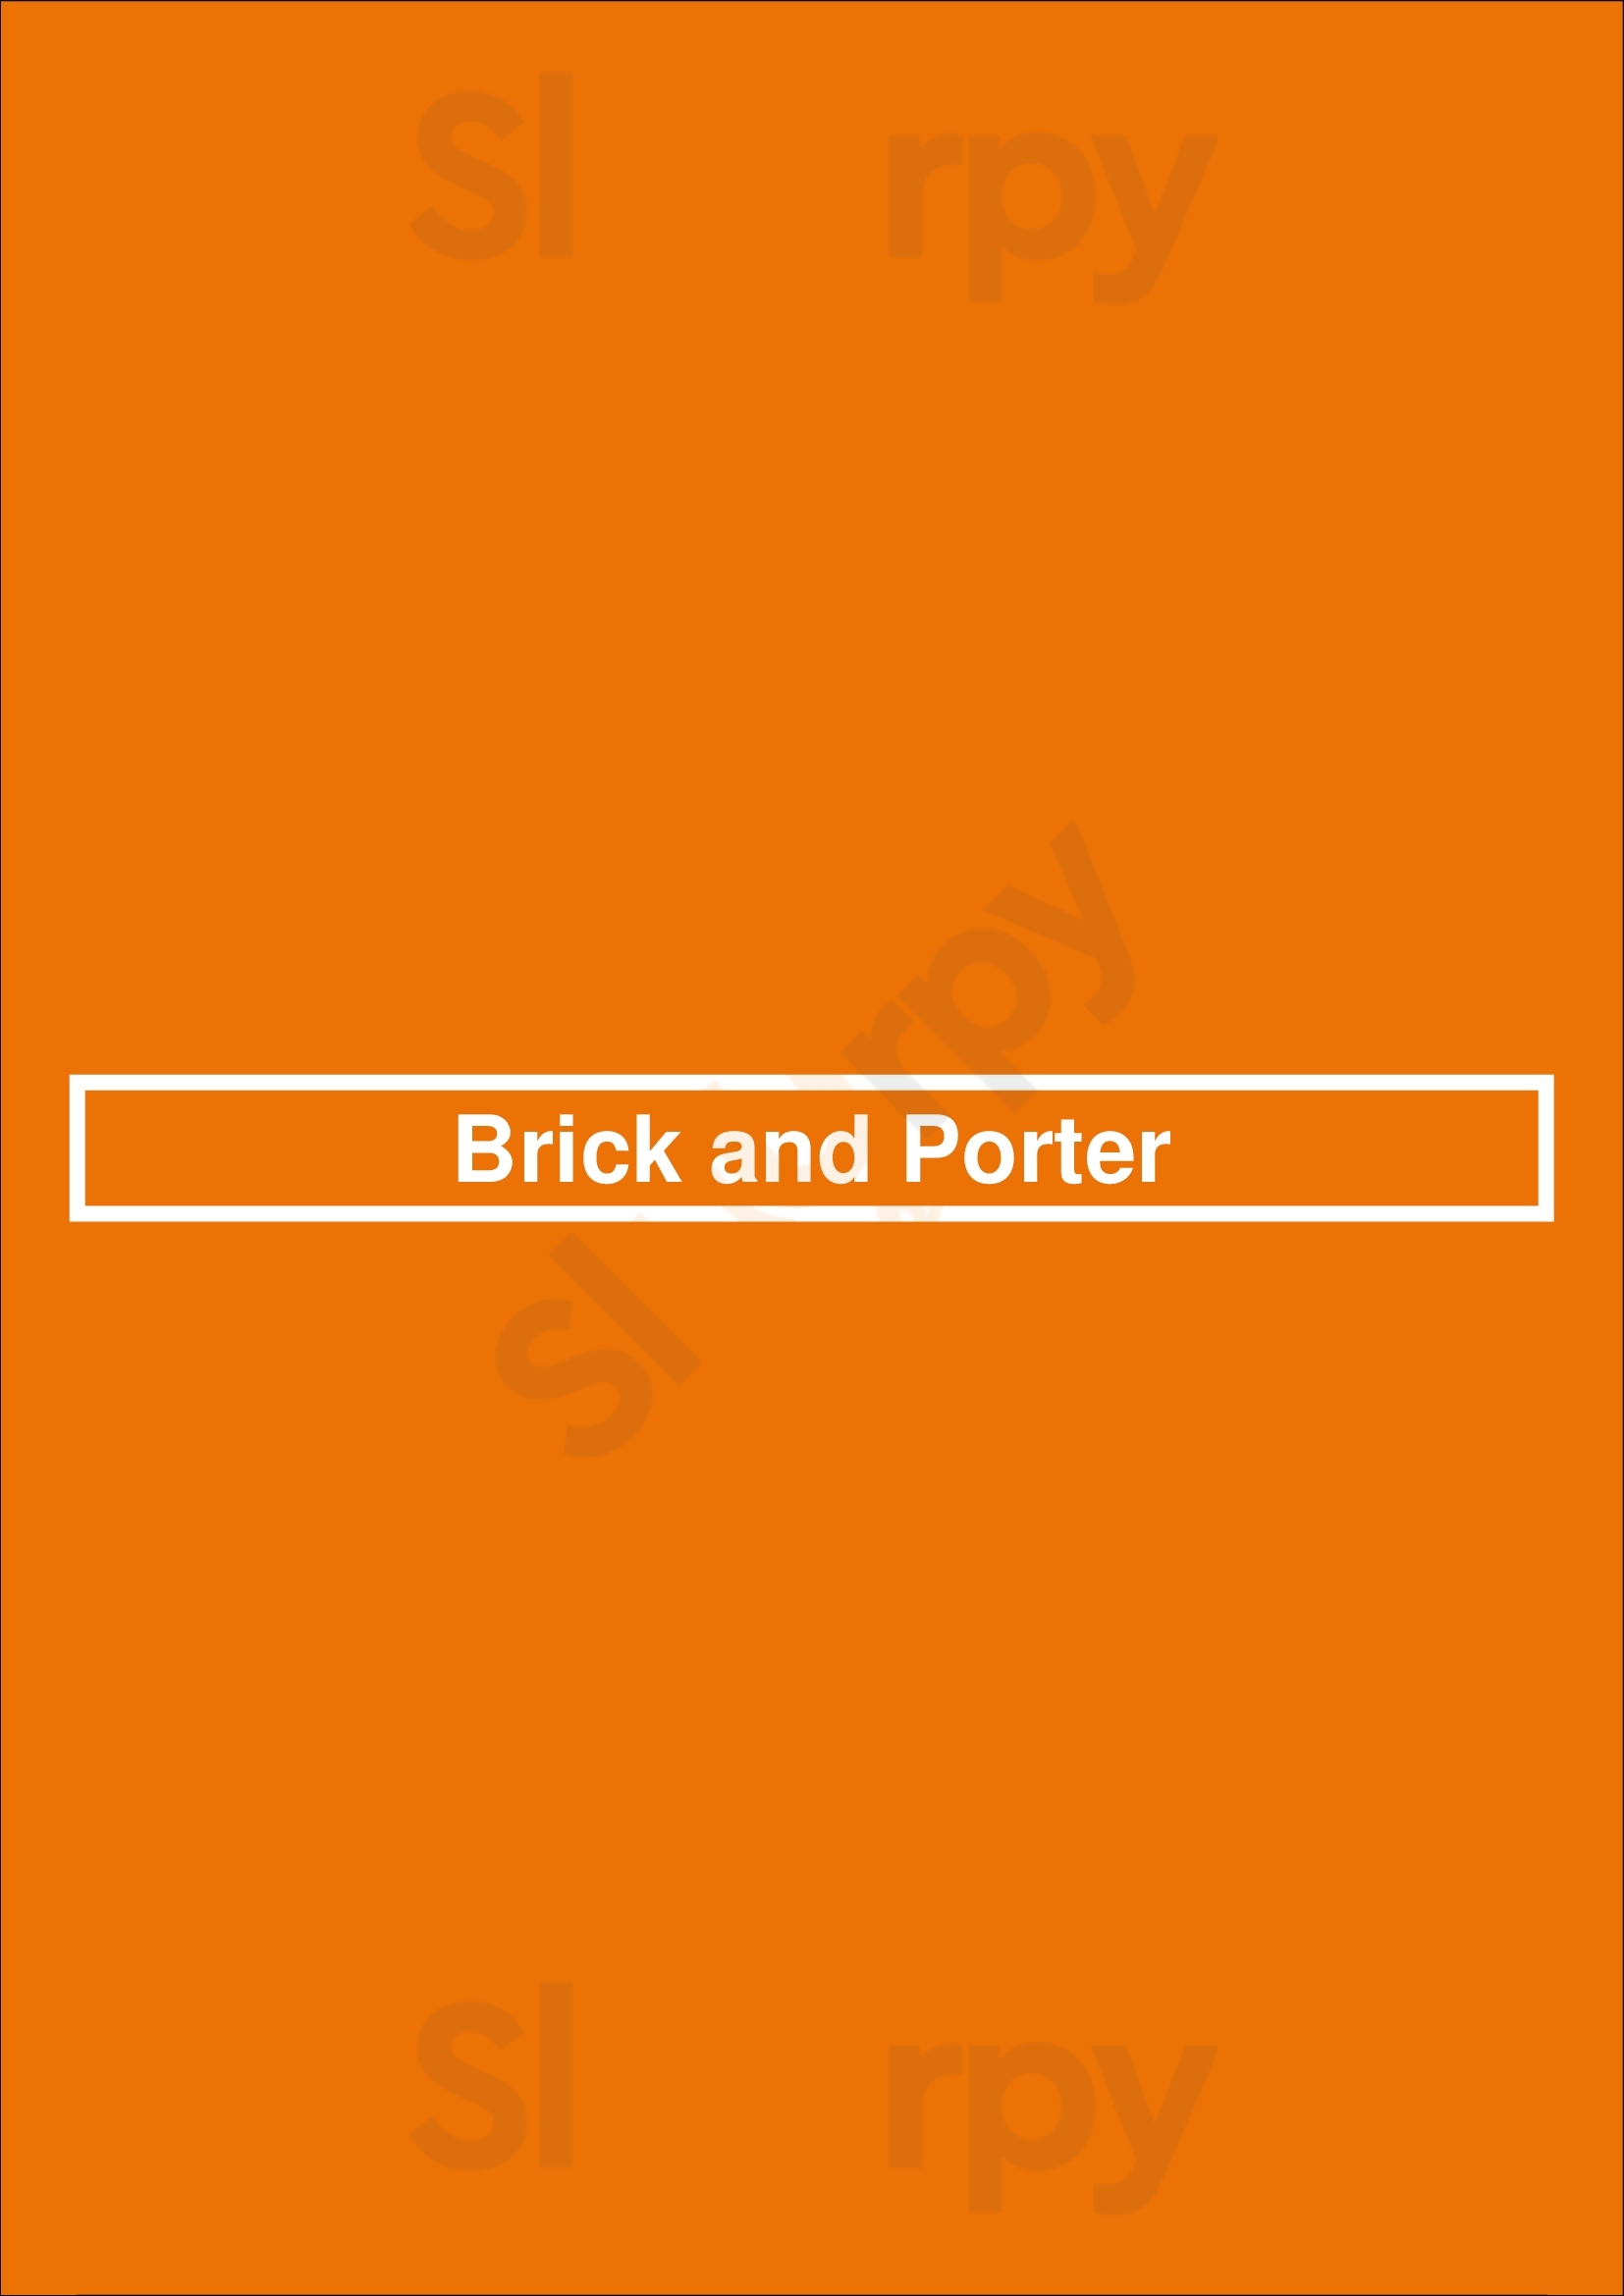 Brick And Porter Grand Rapids Menu - 1